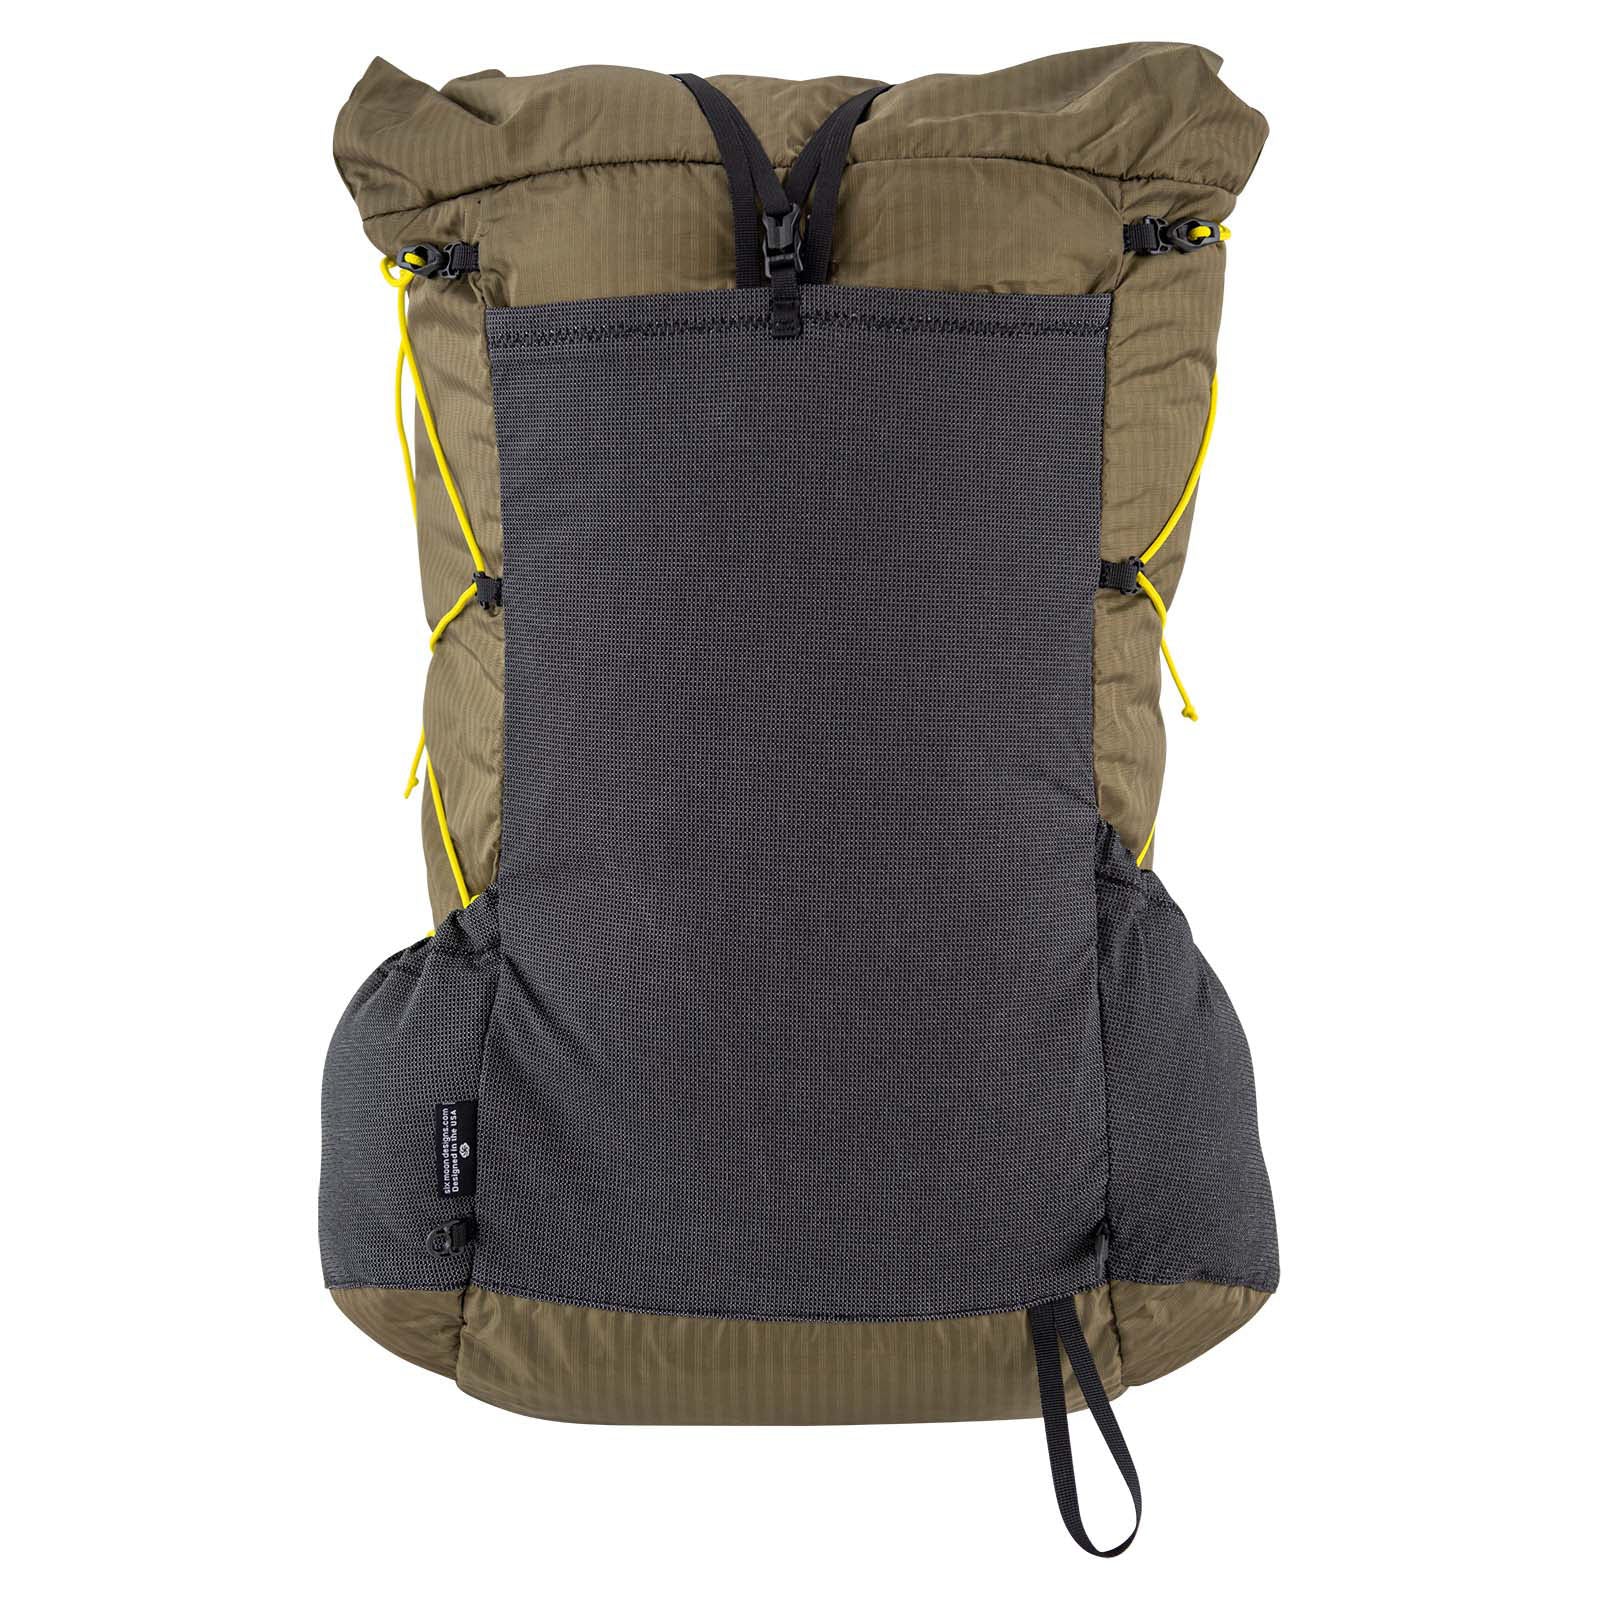 Swift V Hiking Backpack